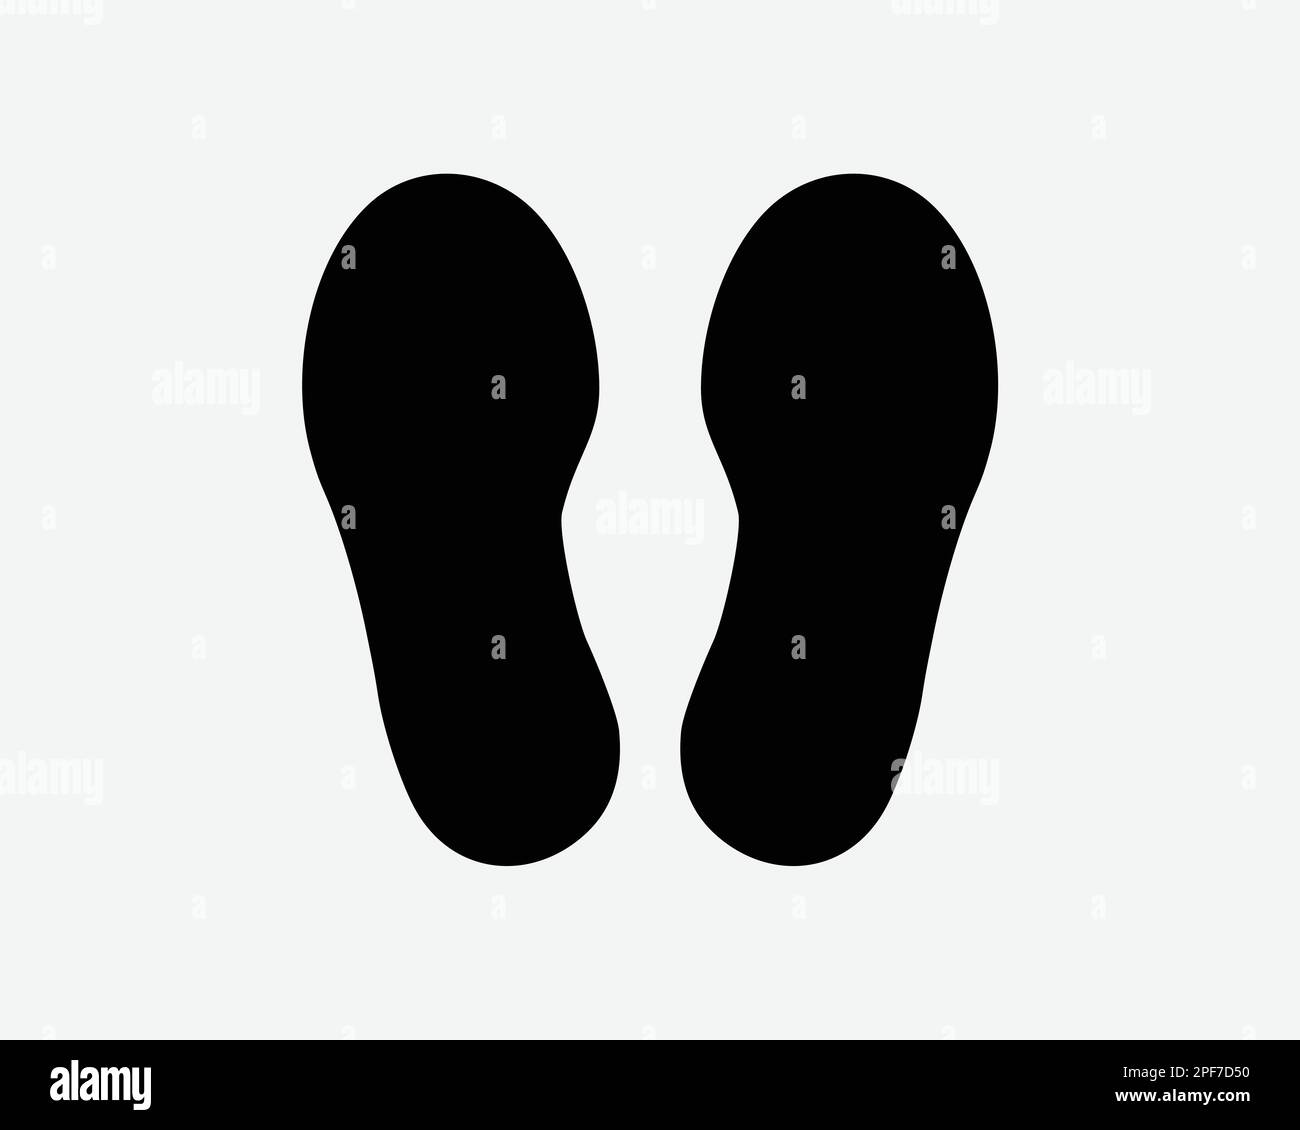 Marche pied pied empreintes de pas pied empreintes de pied Chaussures semelle marches Noir blanc Silhouette symbole signe Clipart graphique Illustration pictogramme vecteur Illustration de Vecteur